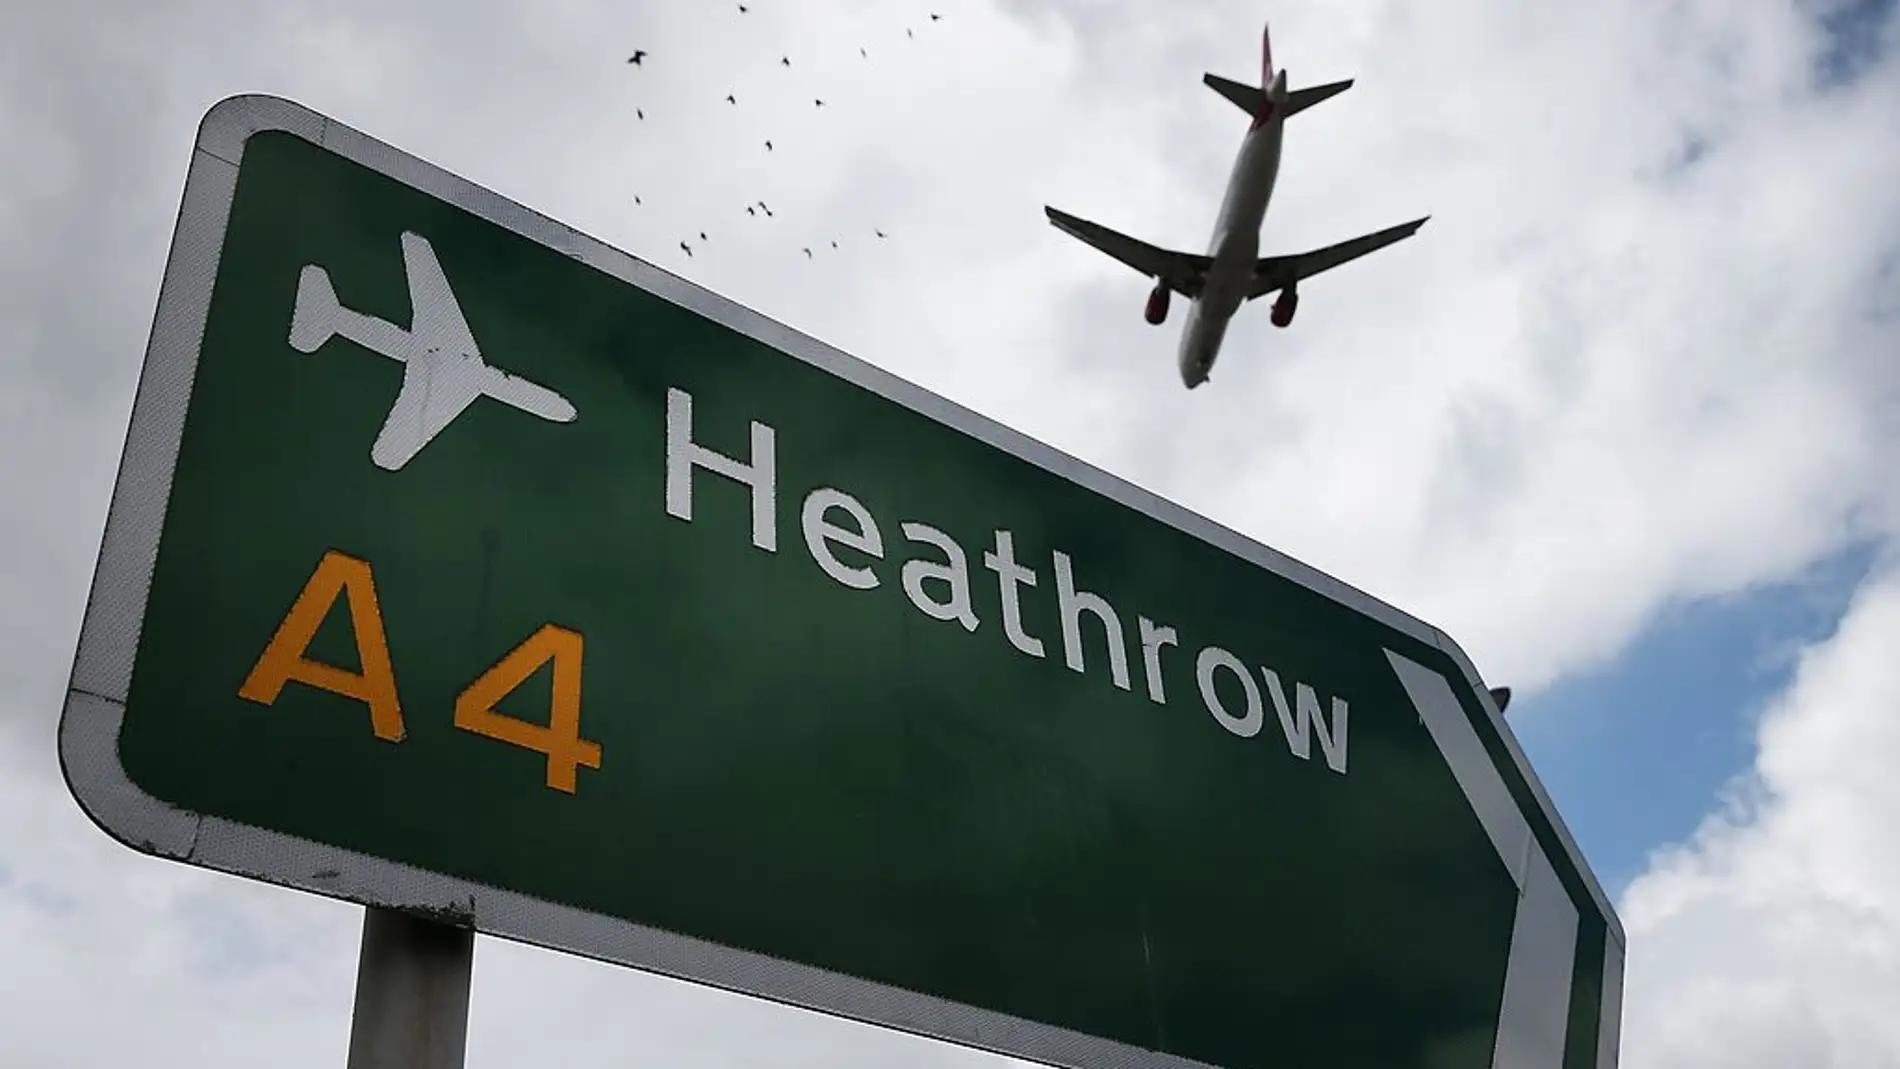 Imagen de archivo de un cartel del aeropuerto de Heathrow 